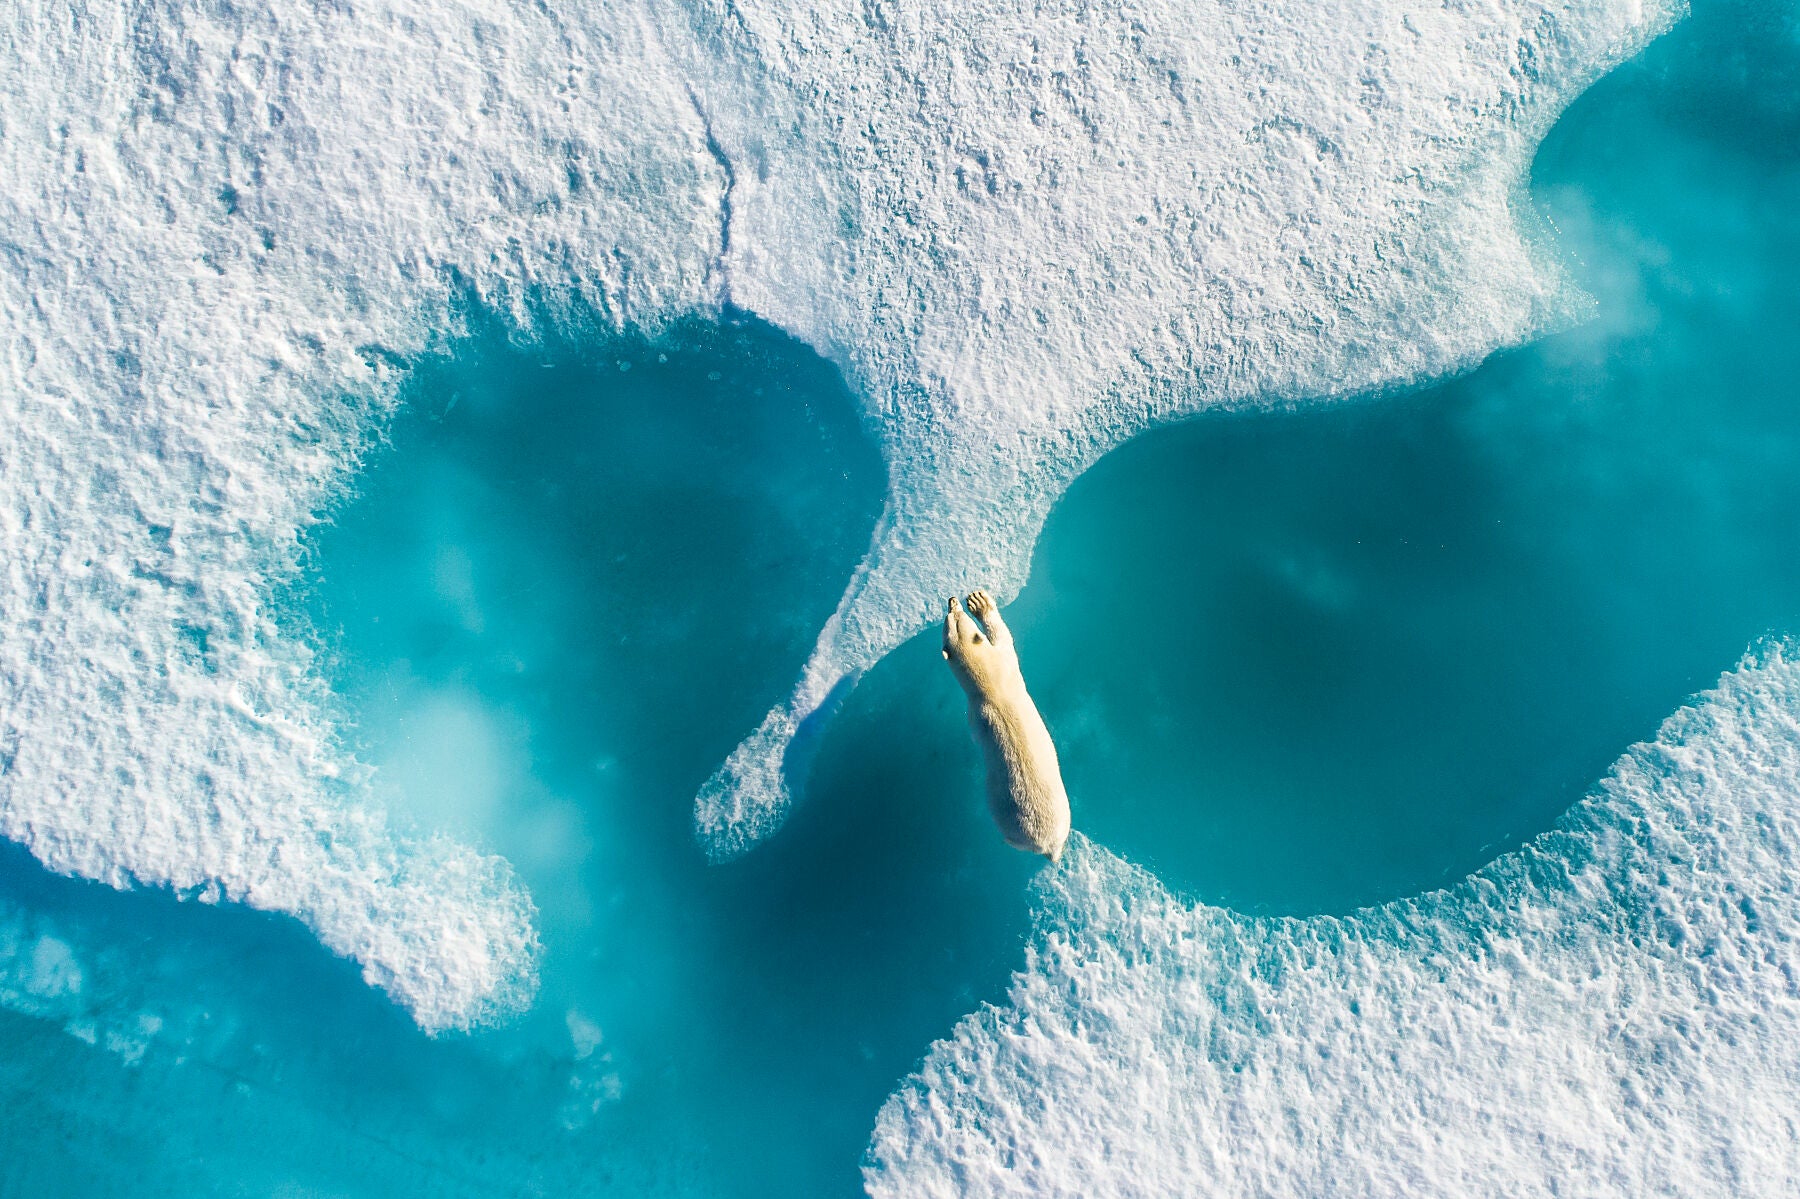 Above the Polar Bear, 2017